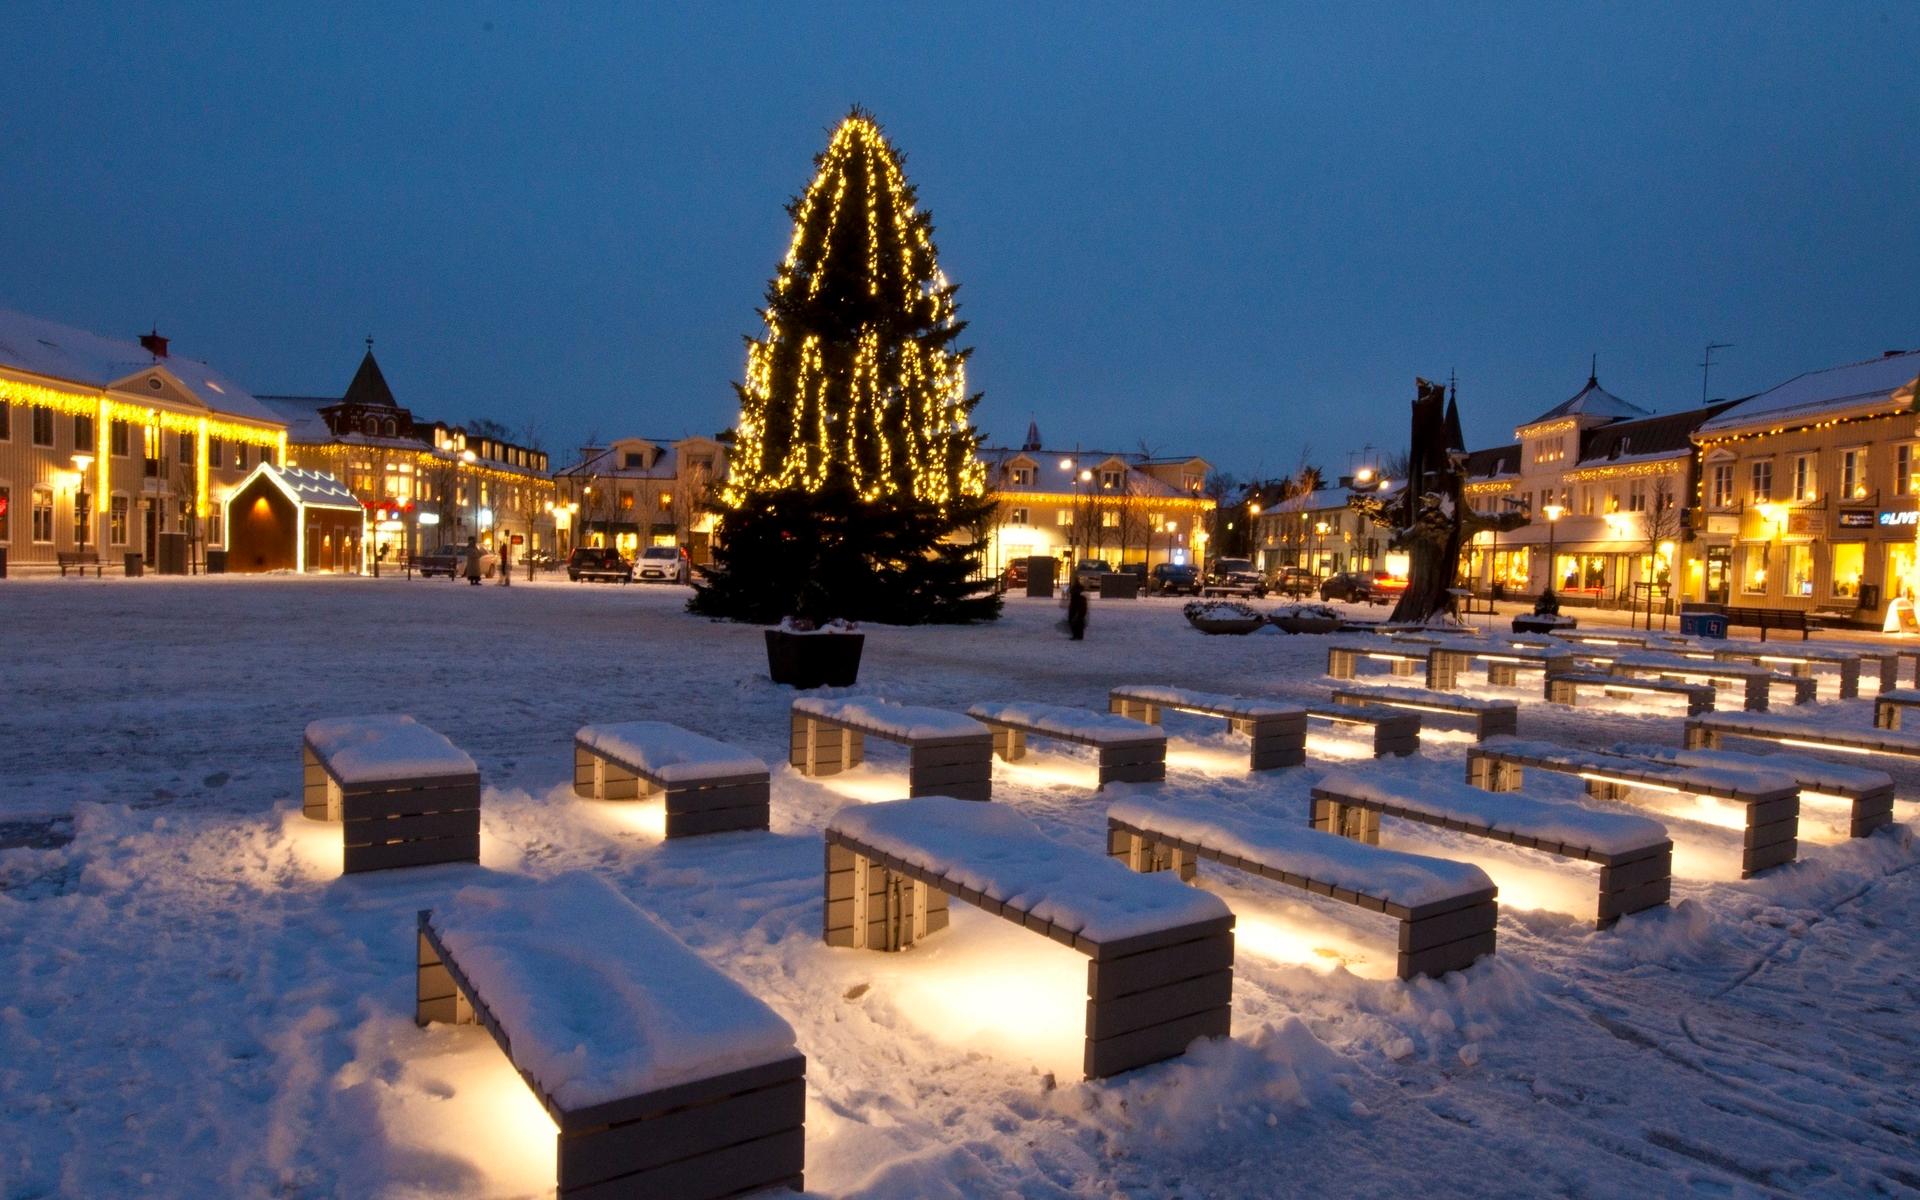 År 2012 prydde denna julgran torget i Kungsbacka.